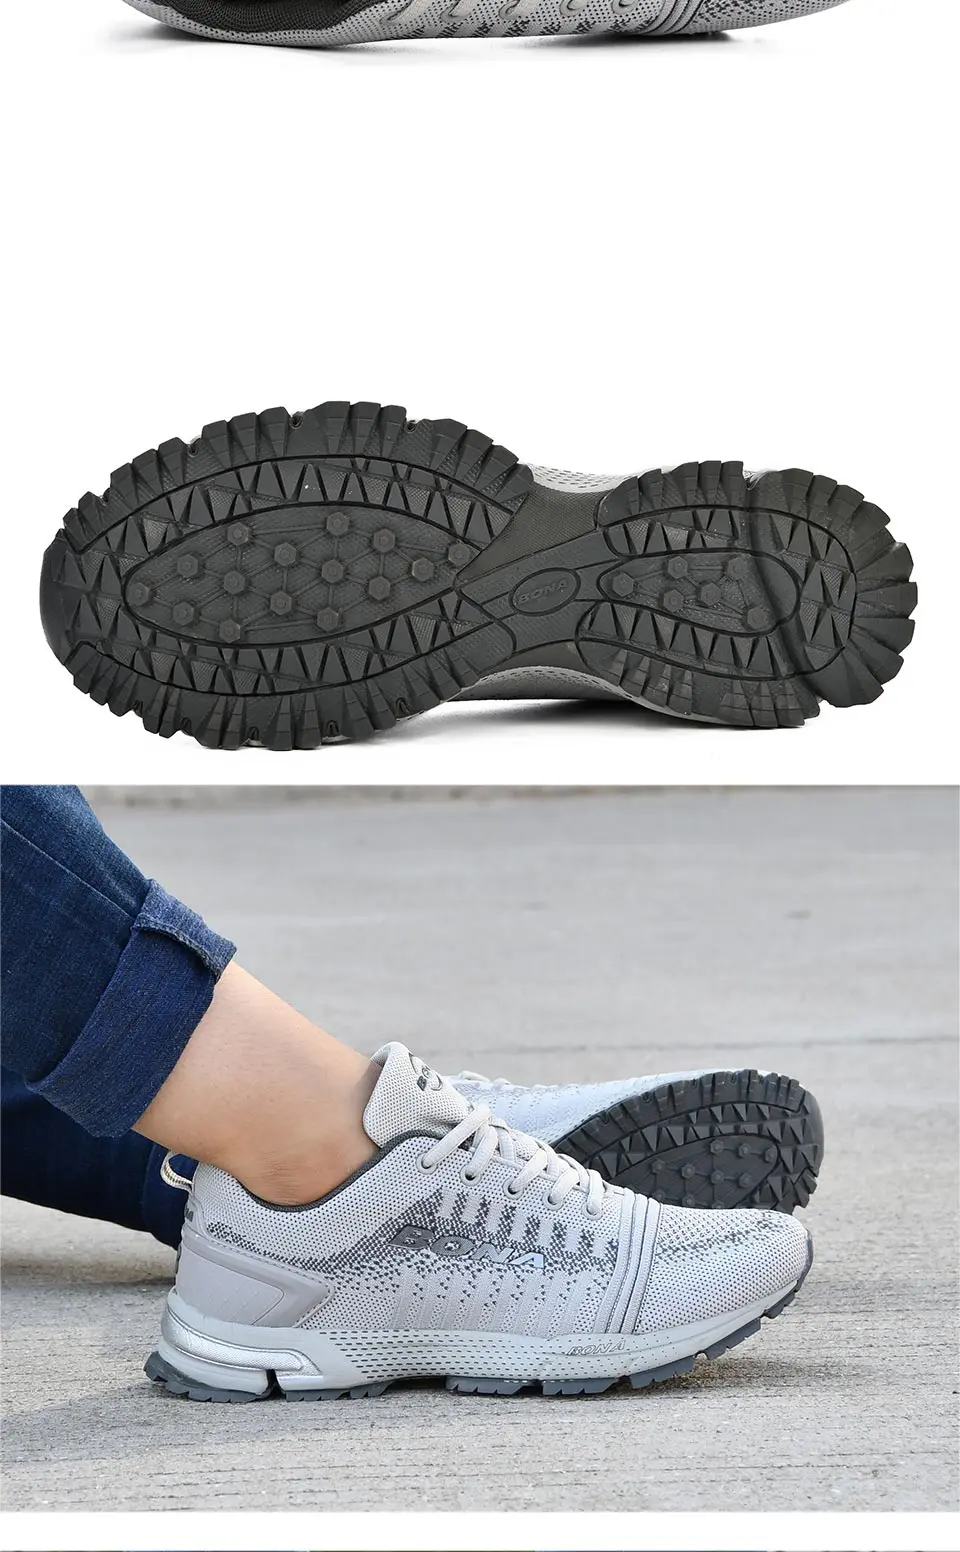 BONA/мужские кроссовки; мужские спортивные кроссовки для бега; прогулочная обувь; легкая беговая Обувь; дышащая обувь; Zapatos; сетчатый верх из дышащего материала